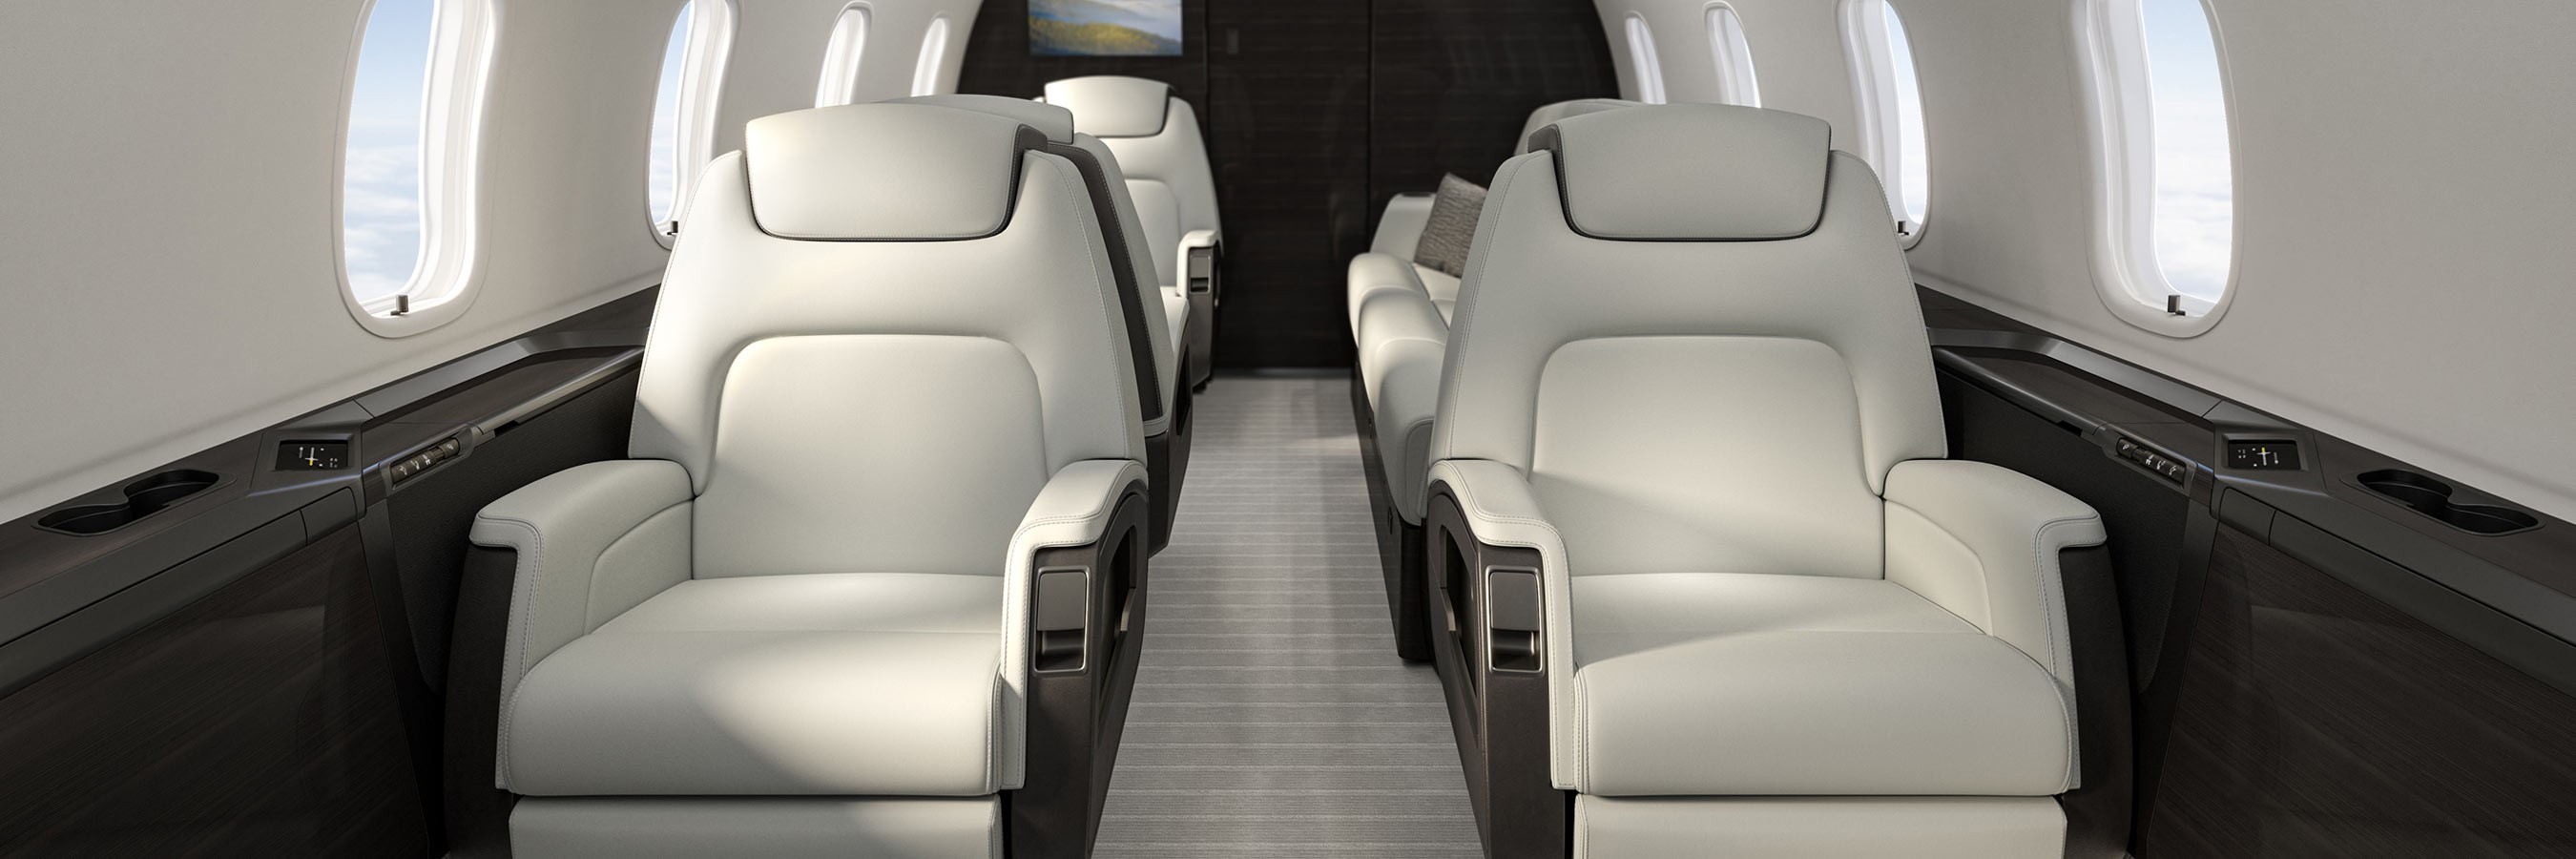 Challenger 350 - cabin world class design 